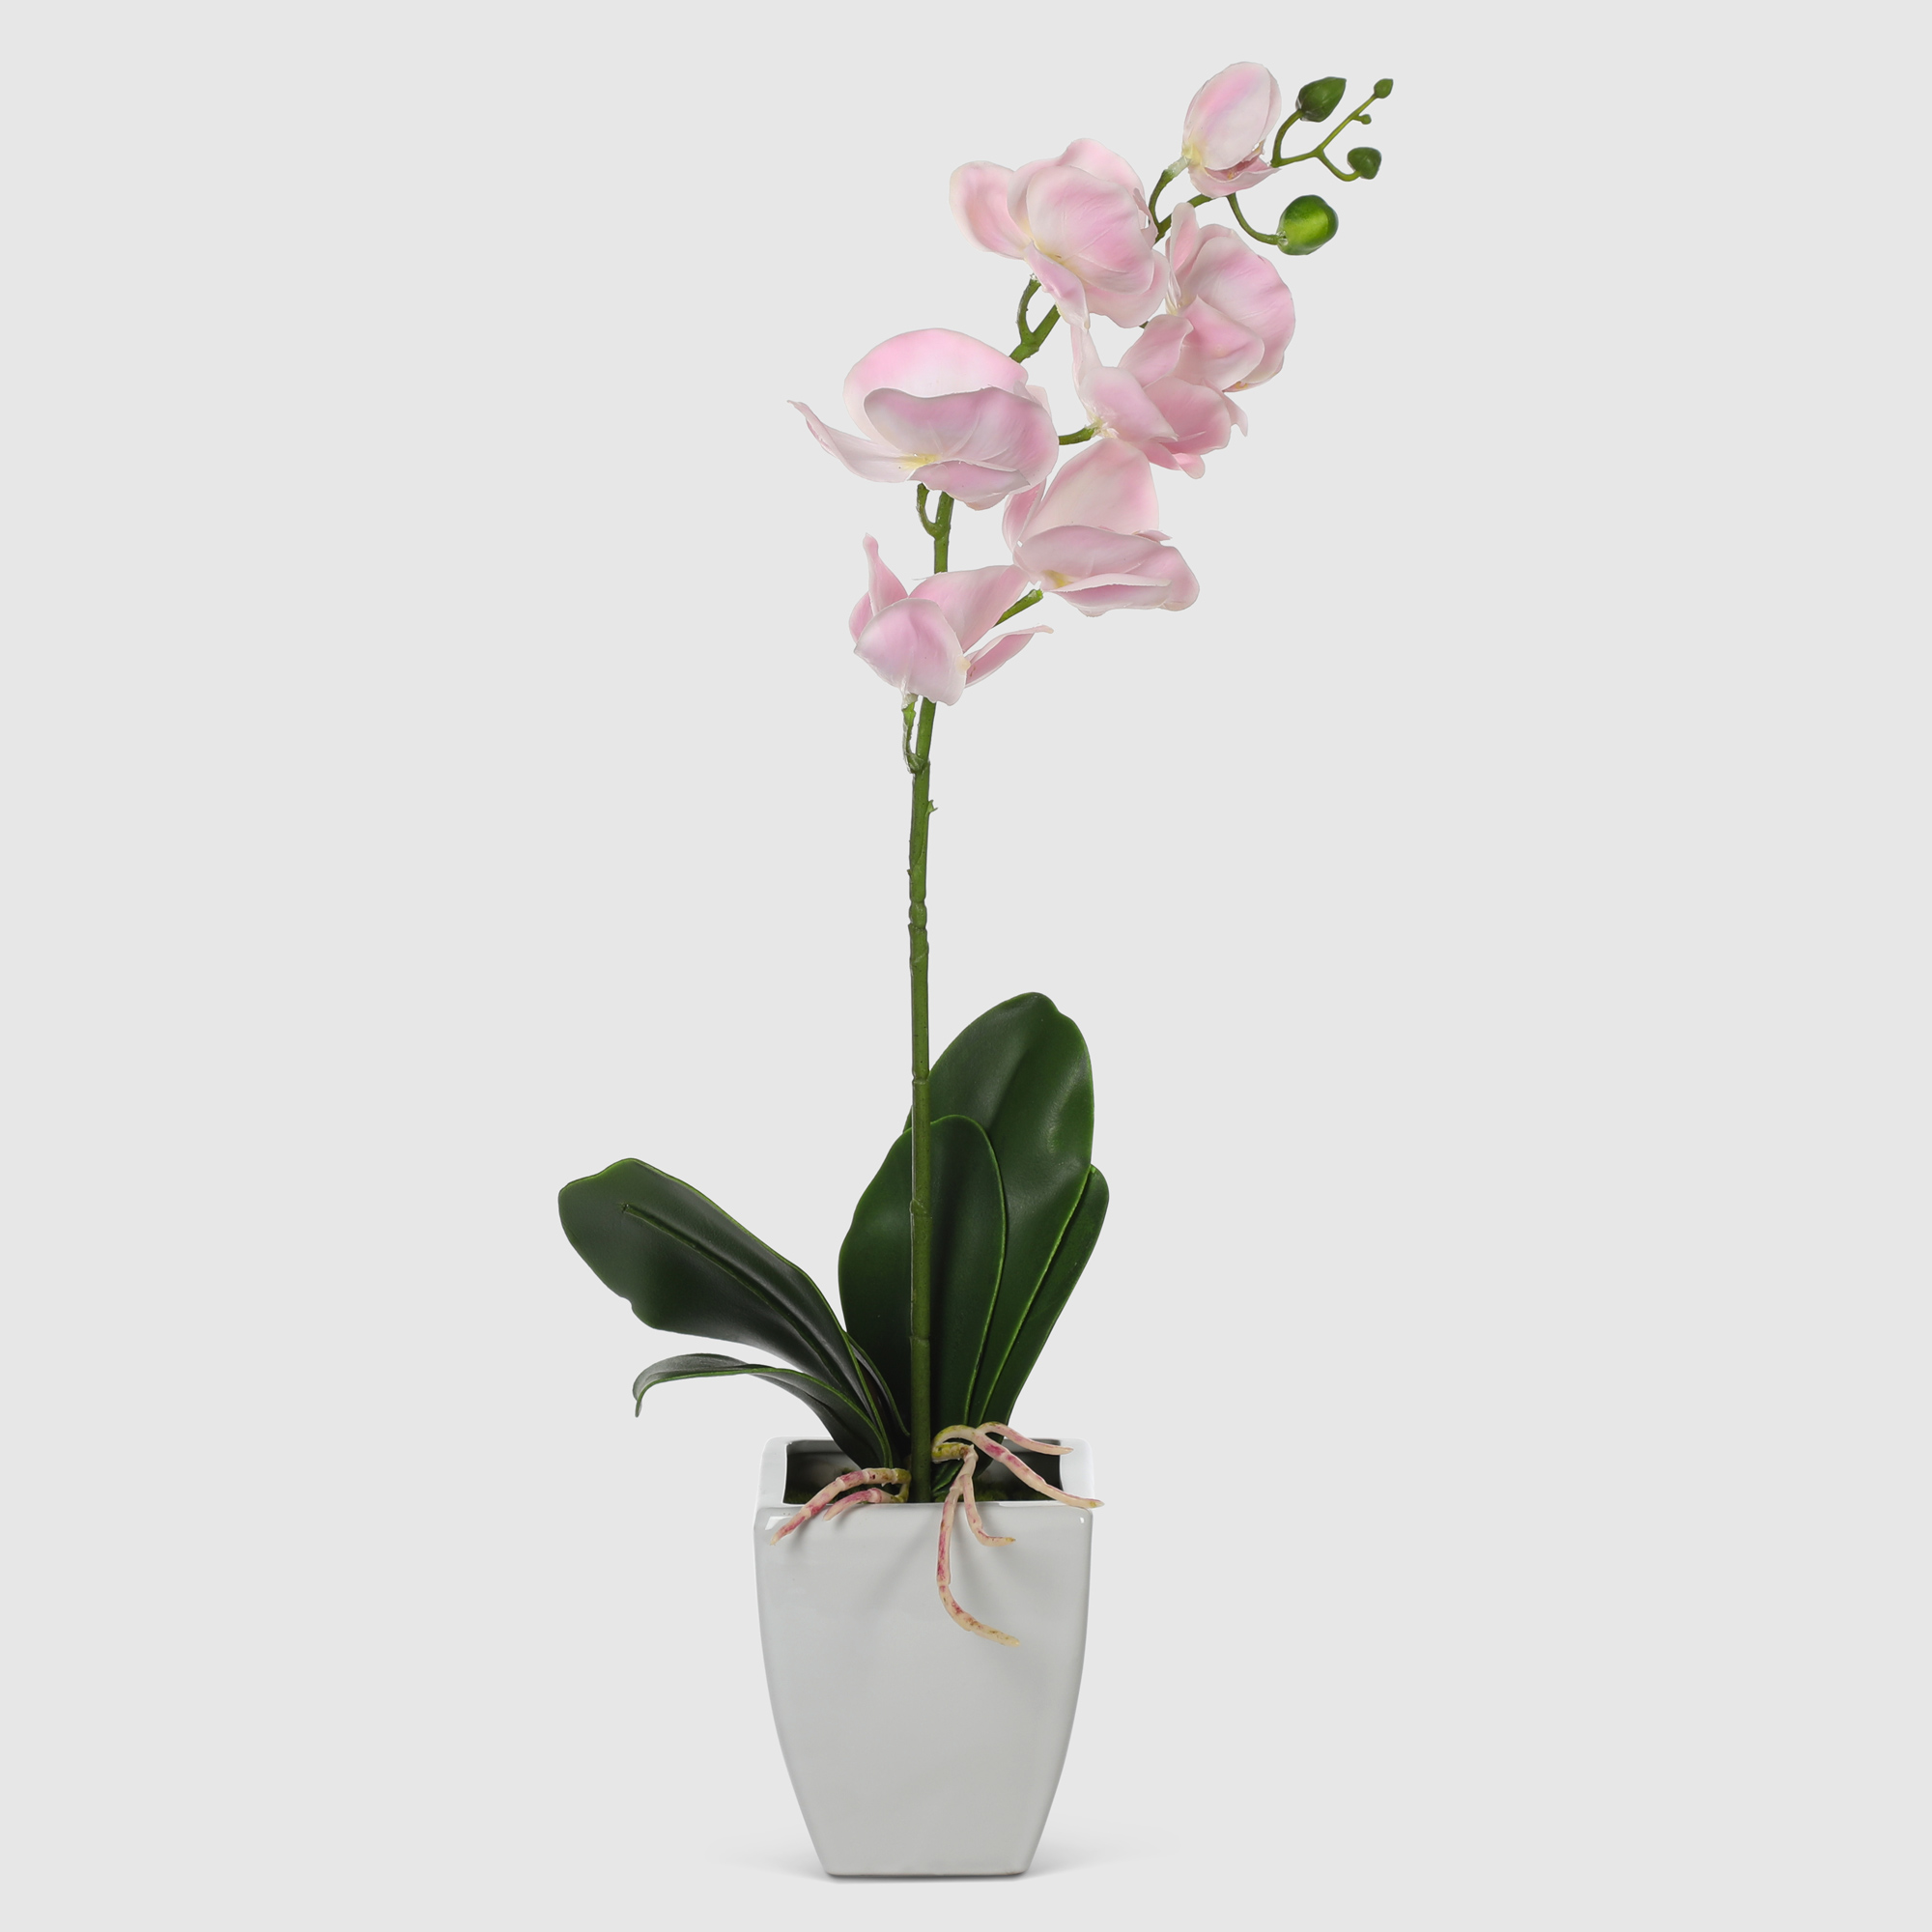 Орхидея в белом кашпо Конэко-О 575_10159_185 60 см орхидея фиолетовая конэко о высота 100 40 60 см